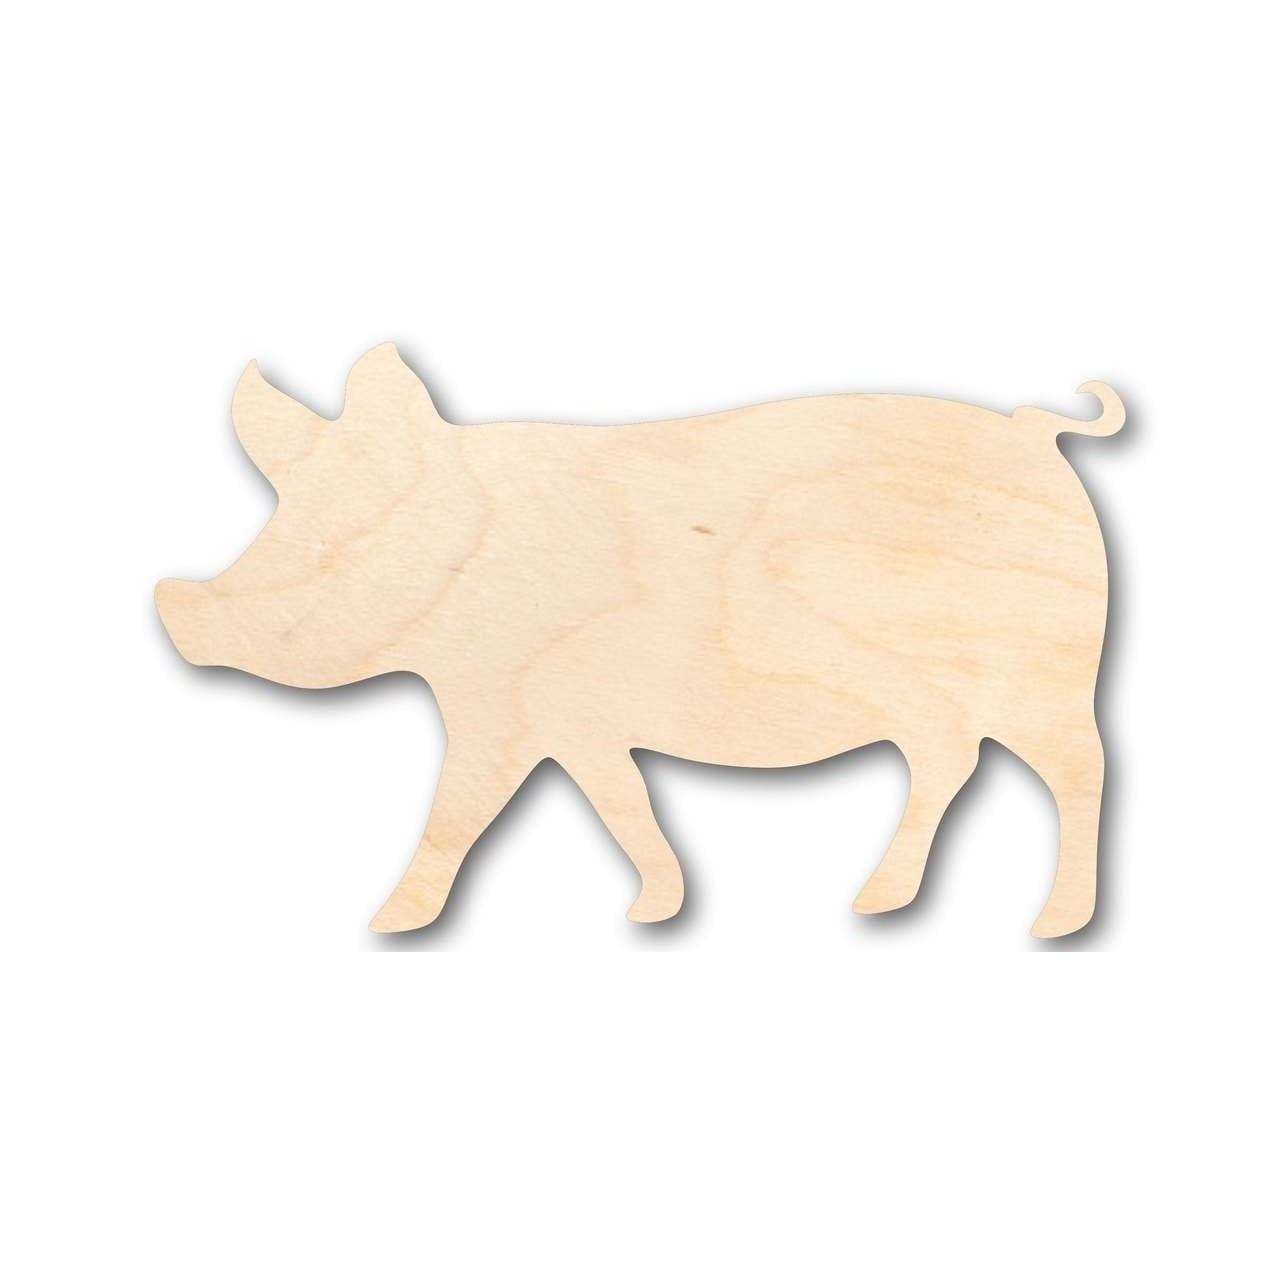 Unfinished Wood Pig Shape - Farm Animal - Craft - up to 24